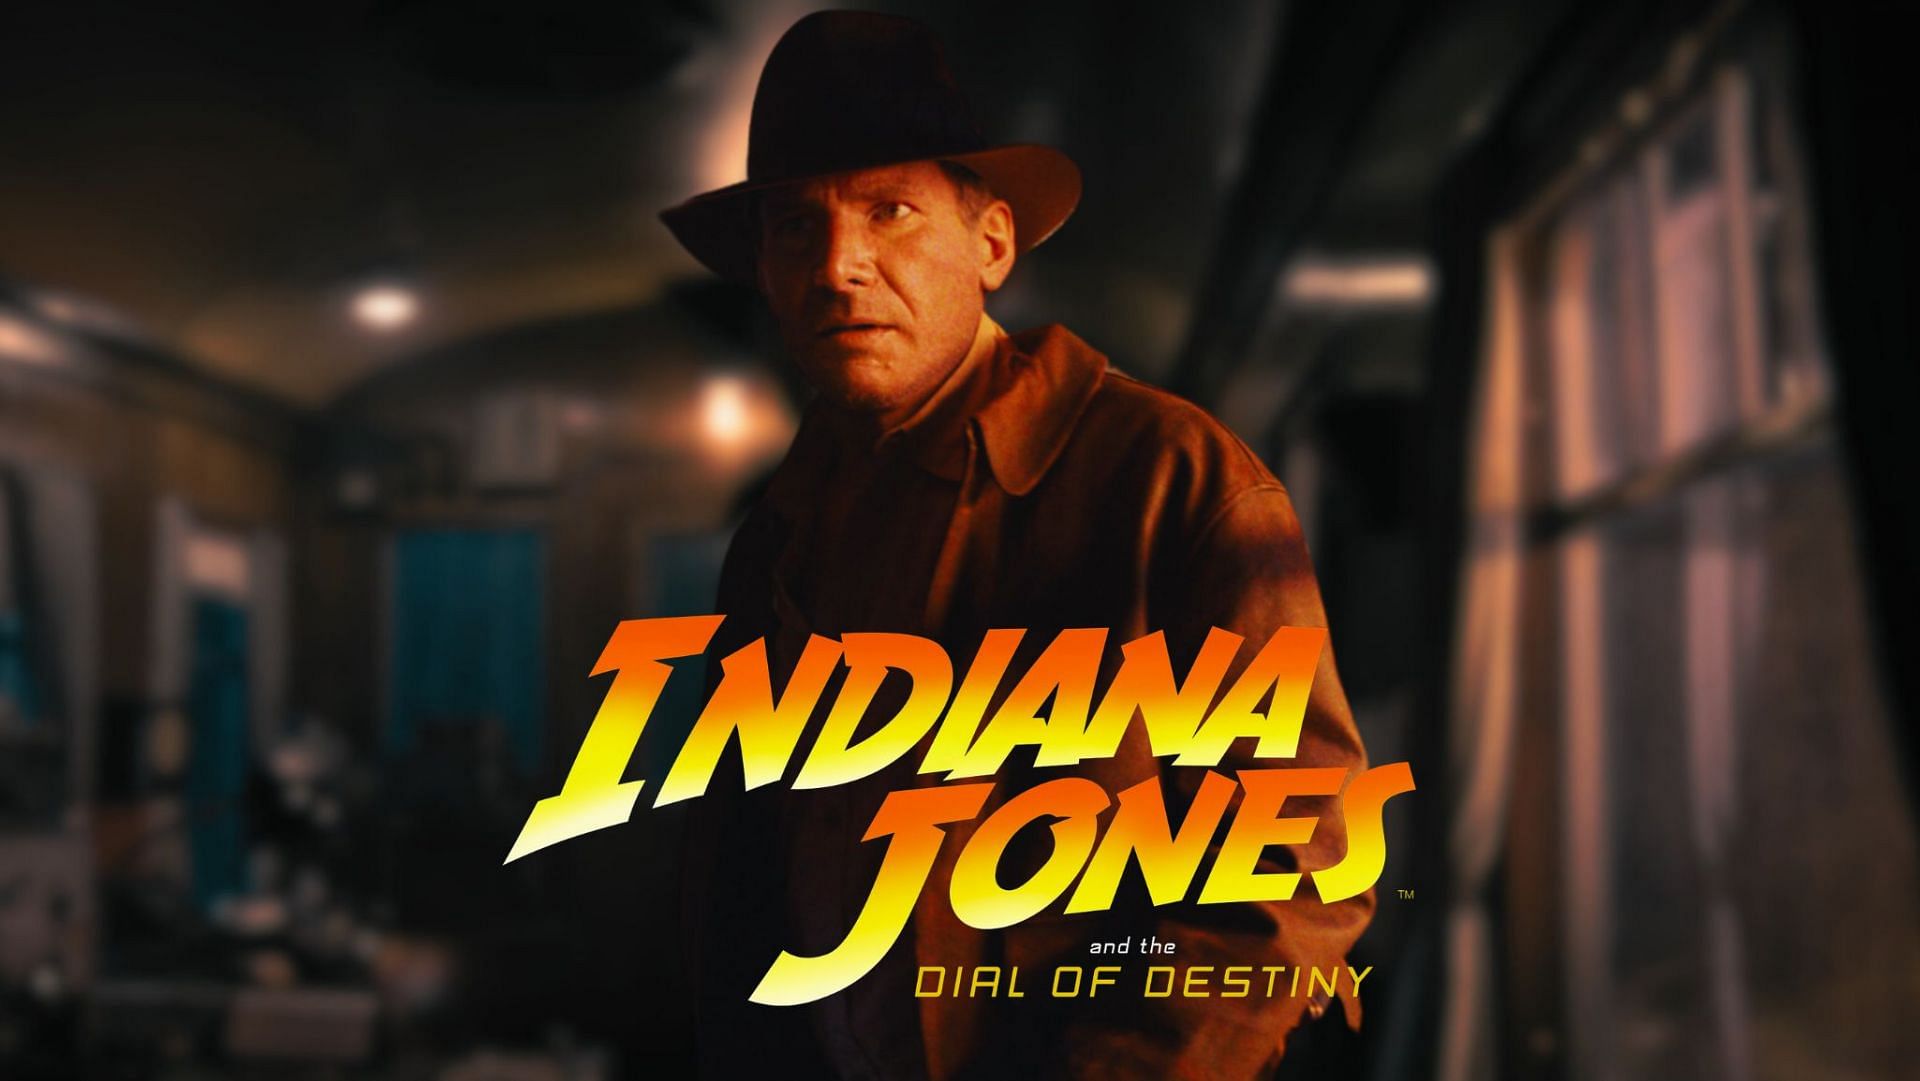 Indiana Jones 5 is ROTTEN. in 2023